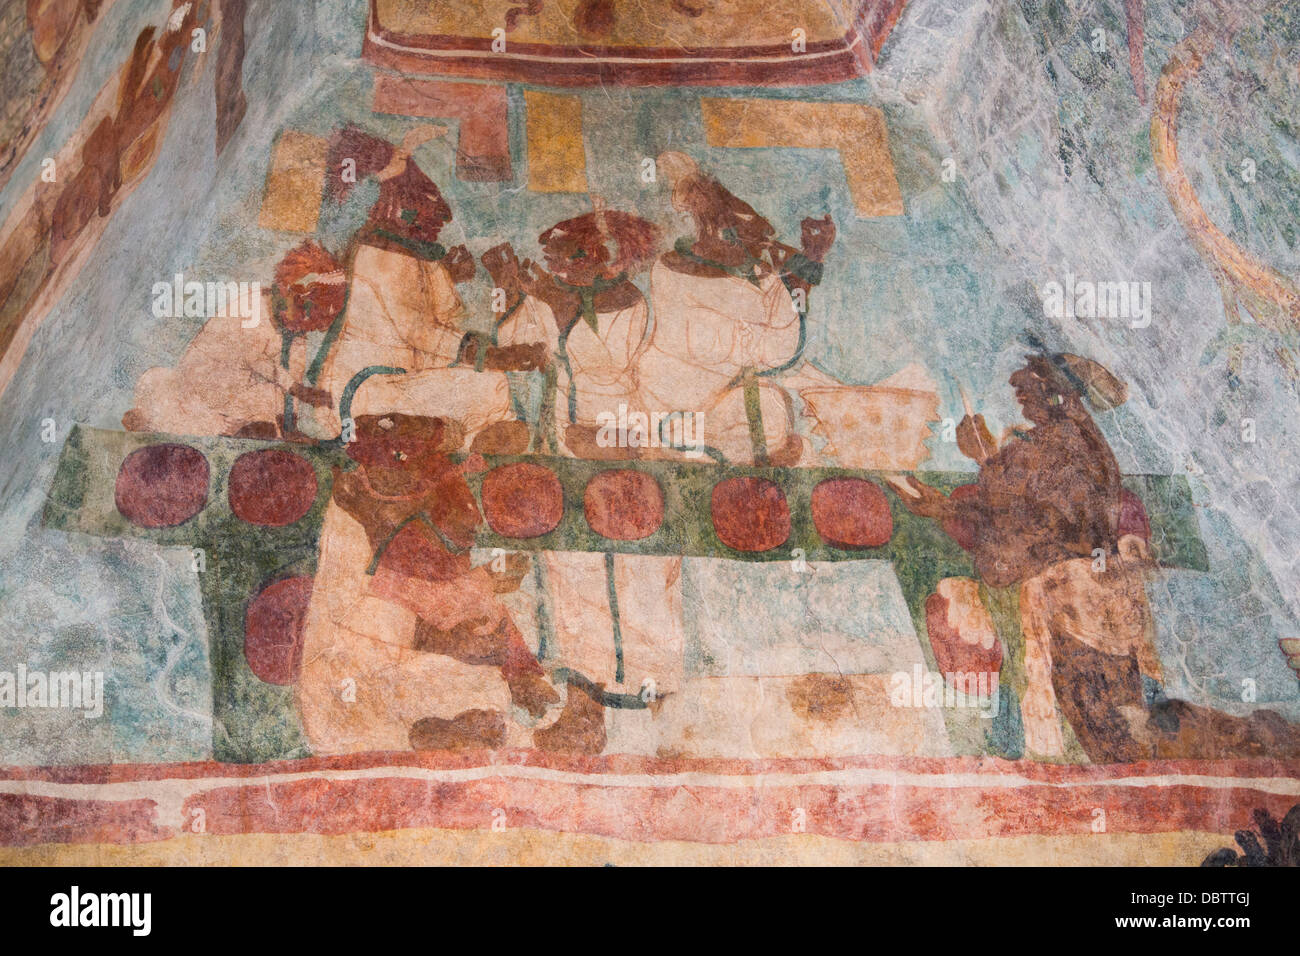 Königliche Familie, die Durchführung einer Blutritual Vermietung, Saal 3, Tempel der Wandmalereien, Bonampak archäologische Zone, Chiapas, Mexiko Stockfoto